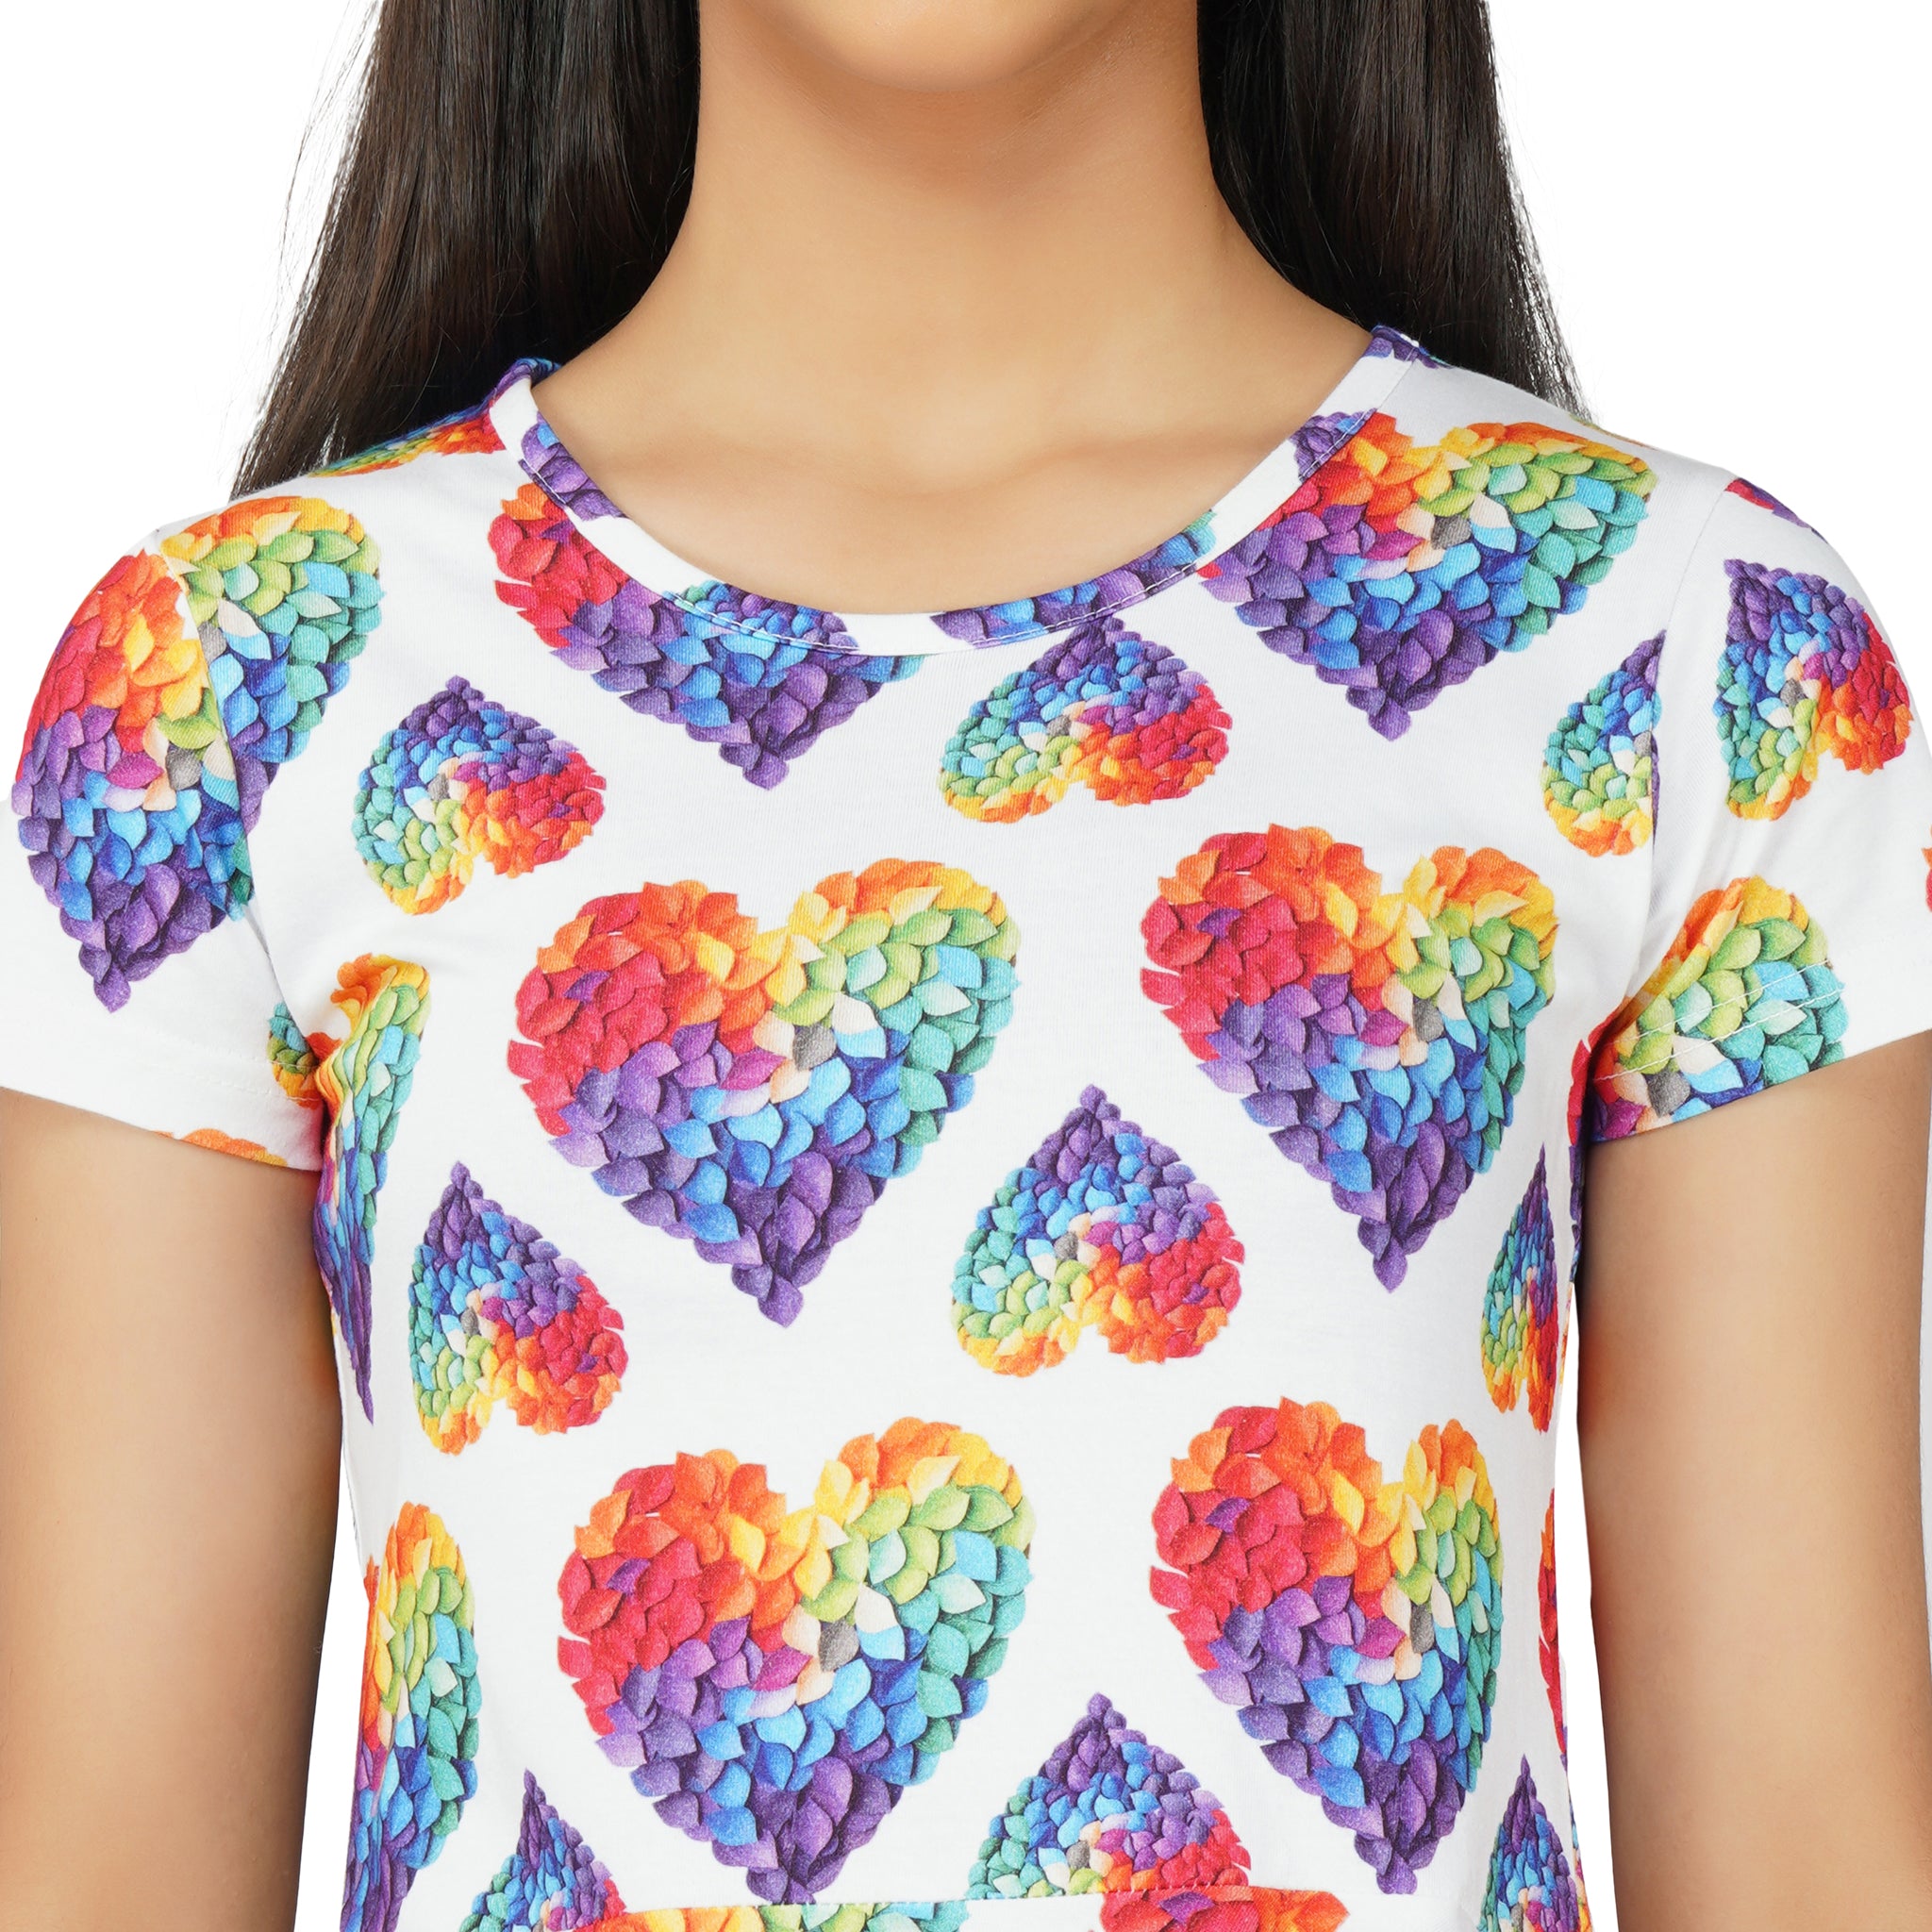 Rainbow Blossom Hearts Kids Twirl Dress